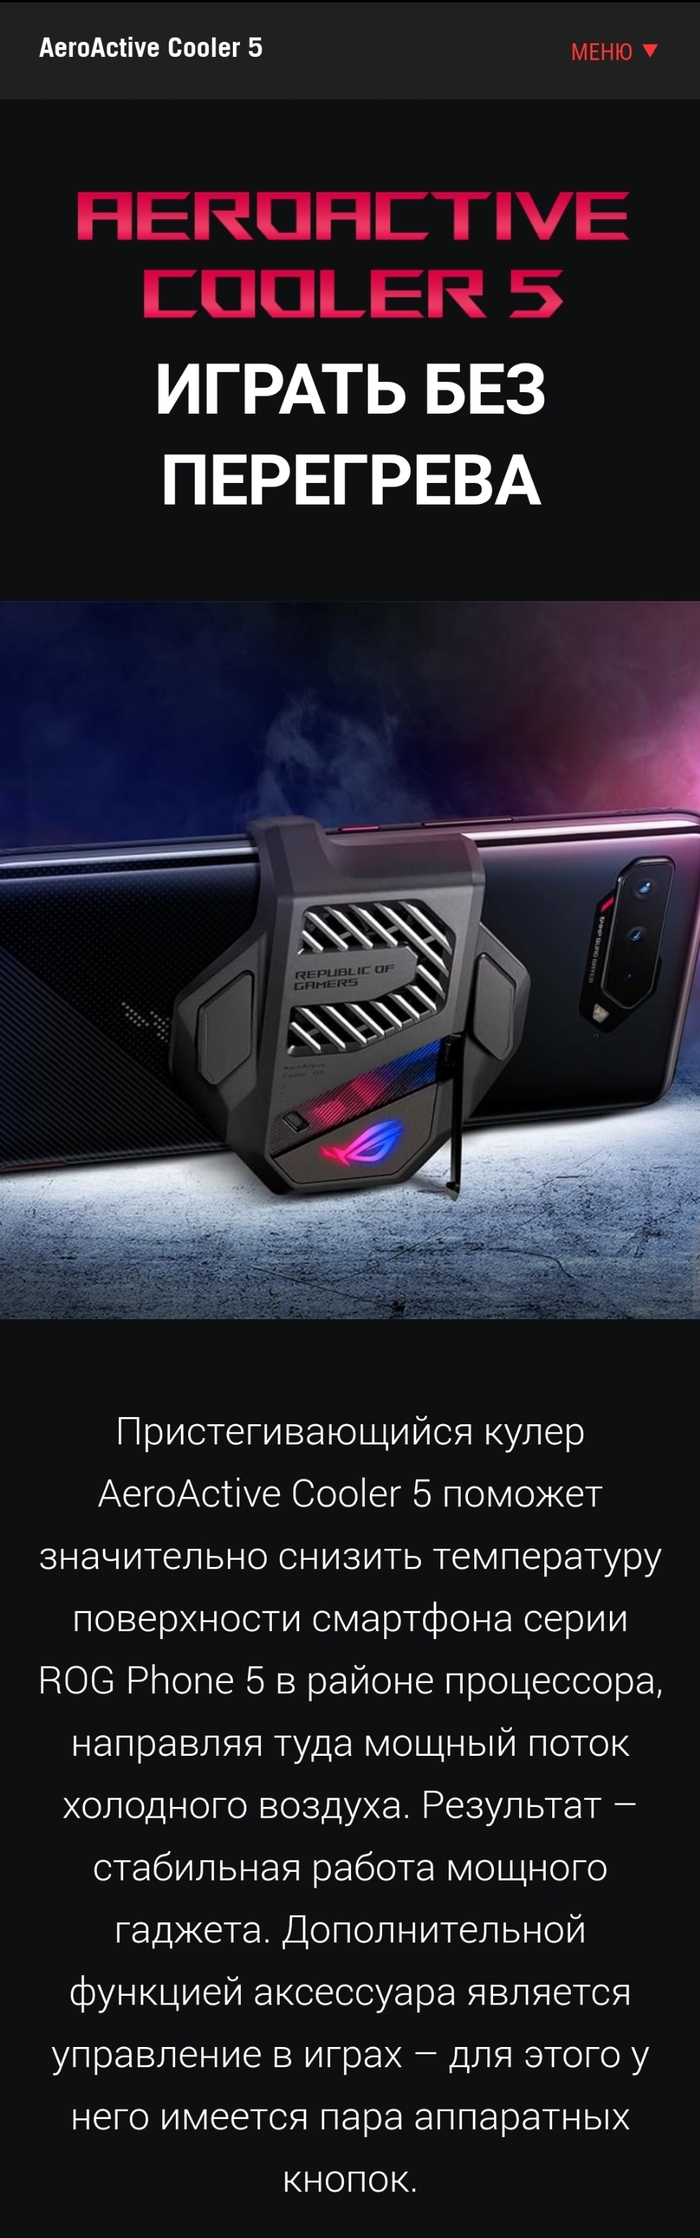 Игровой говорите? Asus Rog Phone 5. Официально восстановленный Москва, Ремонт телефона, Asus RoG, Rog Phone, Пайка, Реболлинг, Асц, Гарантия, Длиннопост